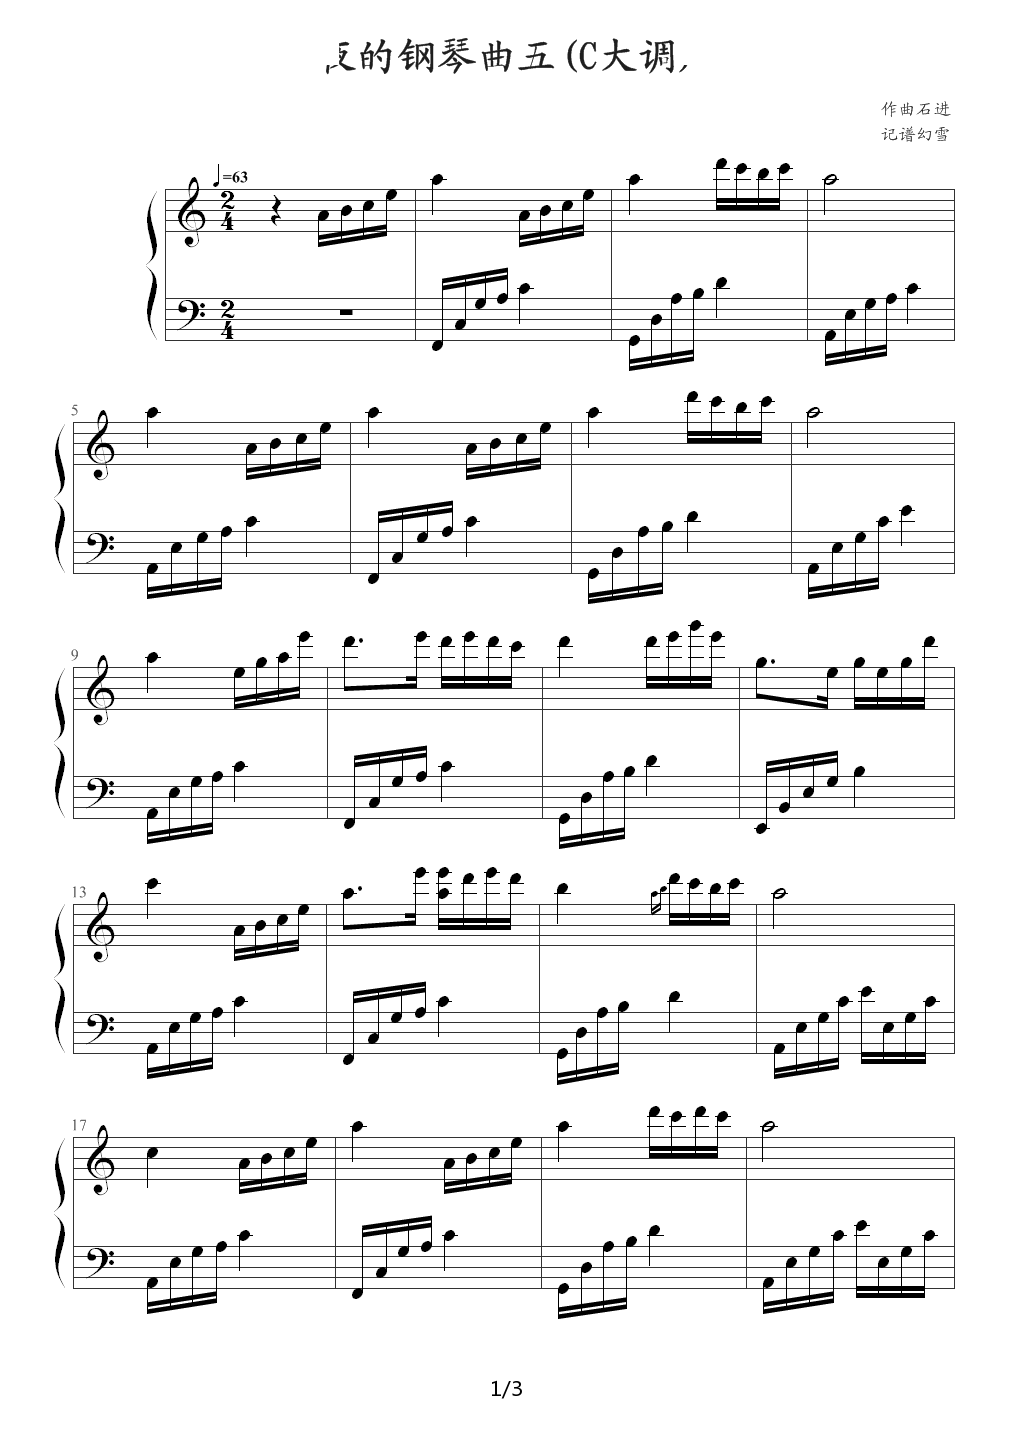 夜的钢琴曲五（C大调） C调